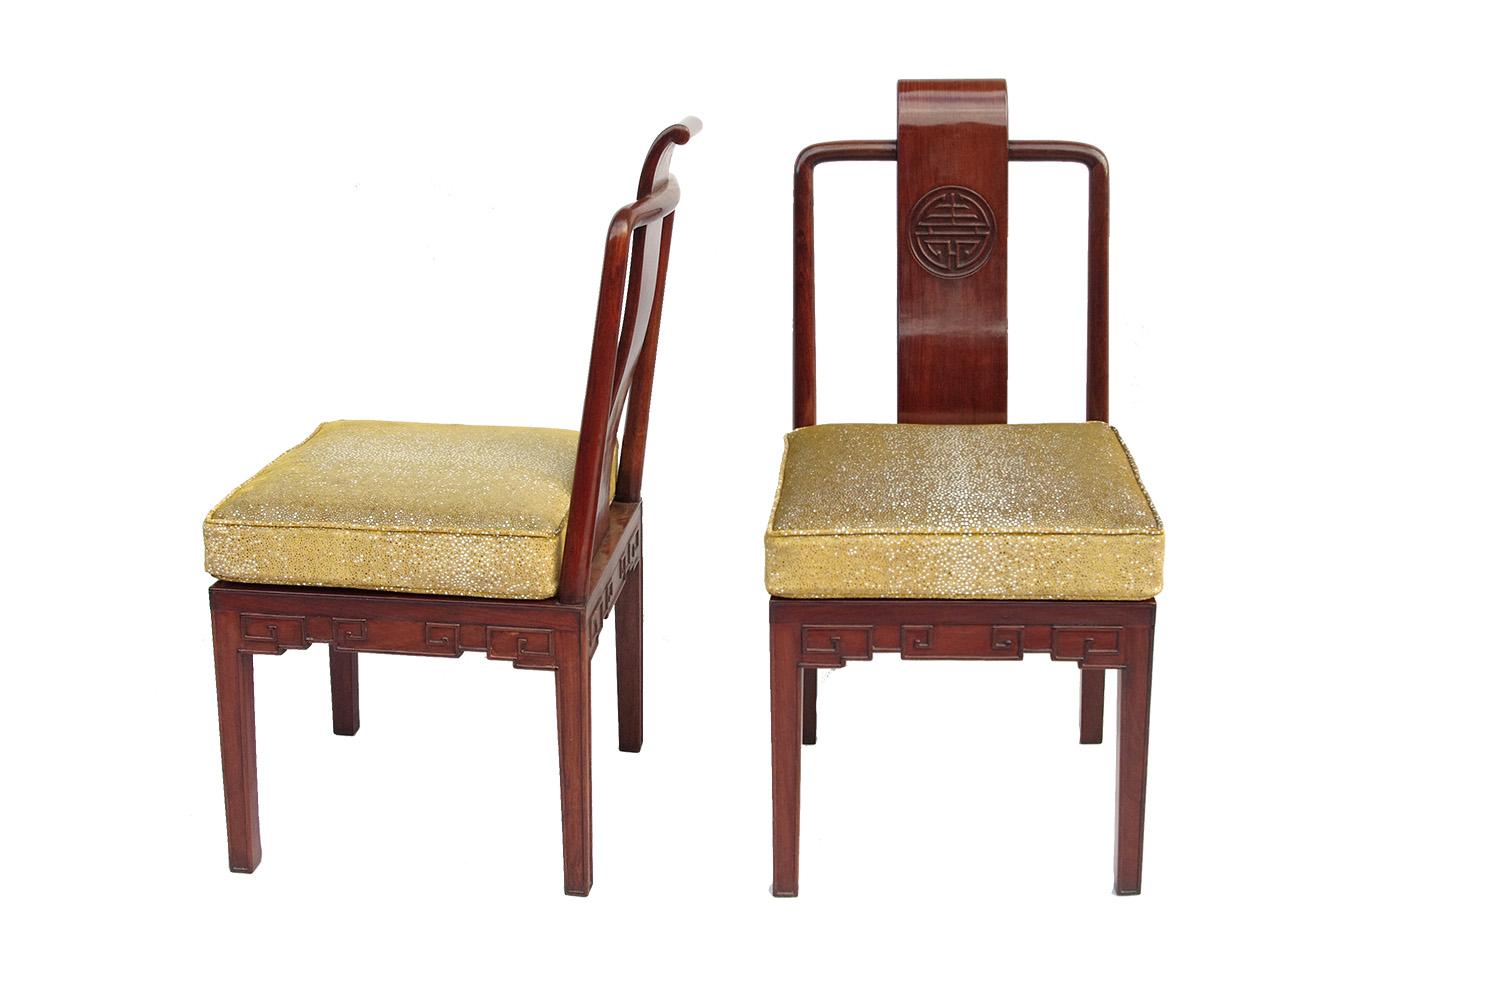 Ein Paar chinesische Stühle im Stil der Ming-Dynastie, die auf vier quadratischen Beinen stehen. Quadratischer Rückensitz mit abgerundeten Ecken und durchbrochener Rückenlehne mit kreisförmigen Schienen, die mit einer S-förmigen Rückenleiste